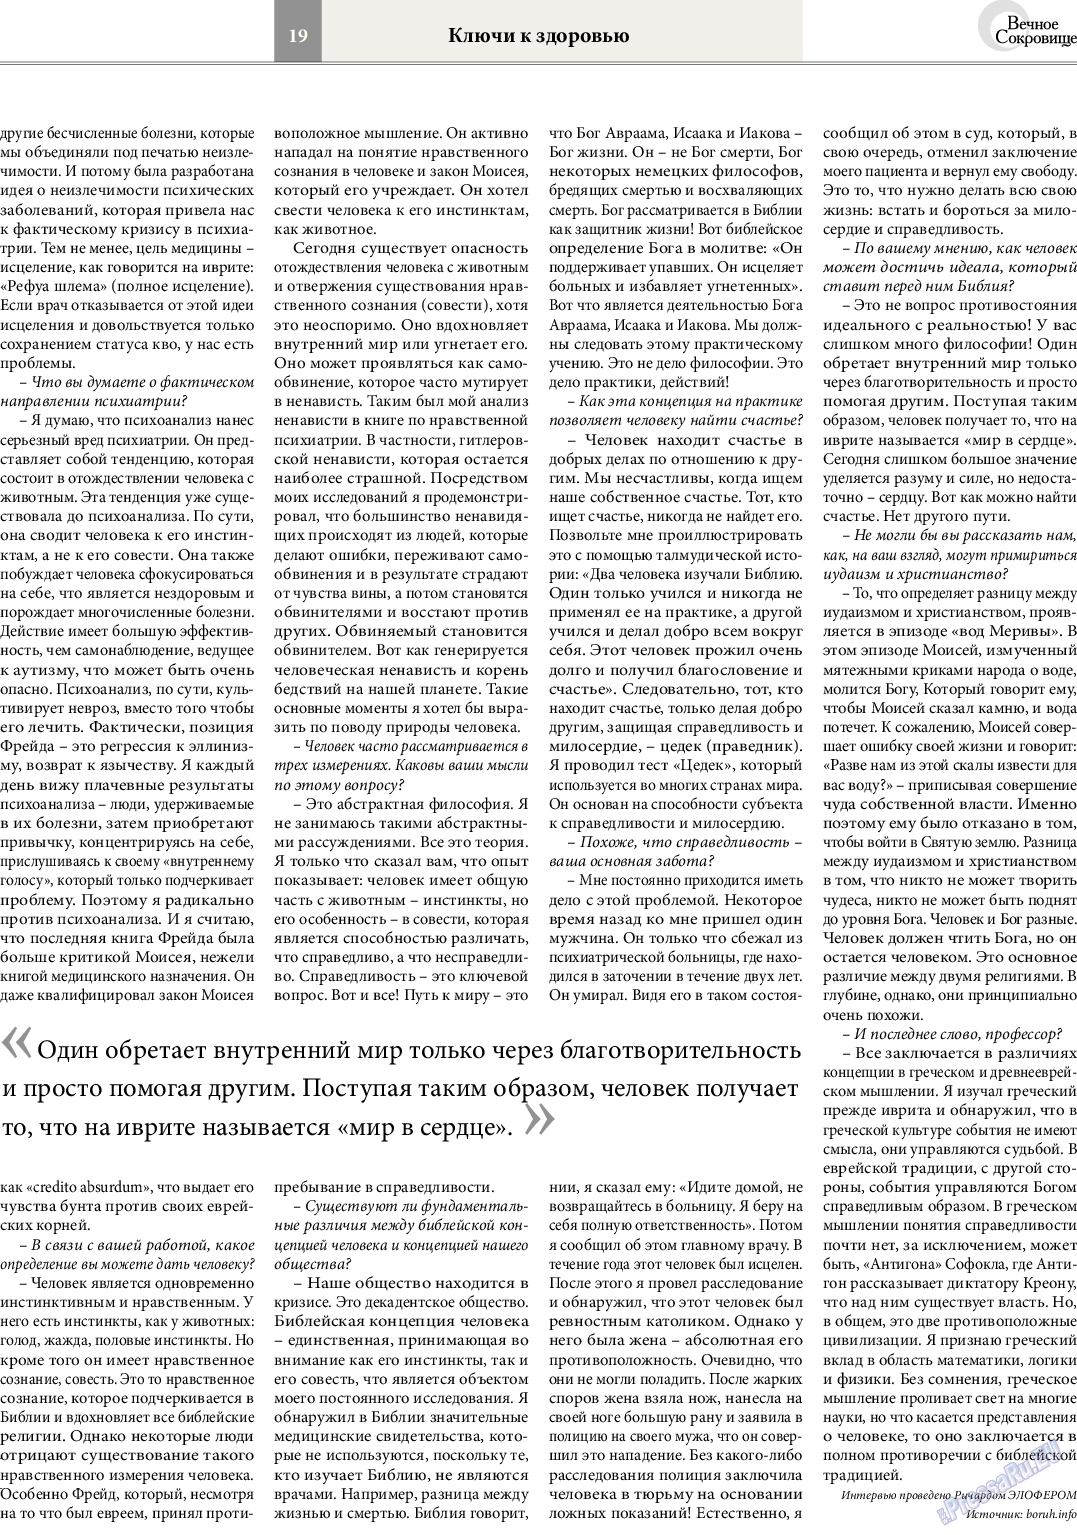 Вечное сокровище (газета). 2014 год, номер 4, стр. 19